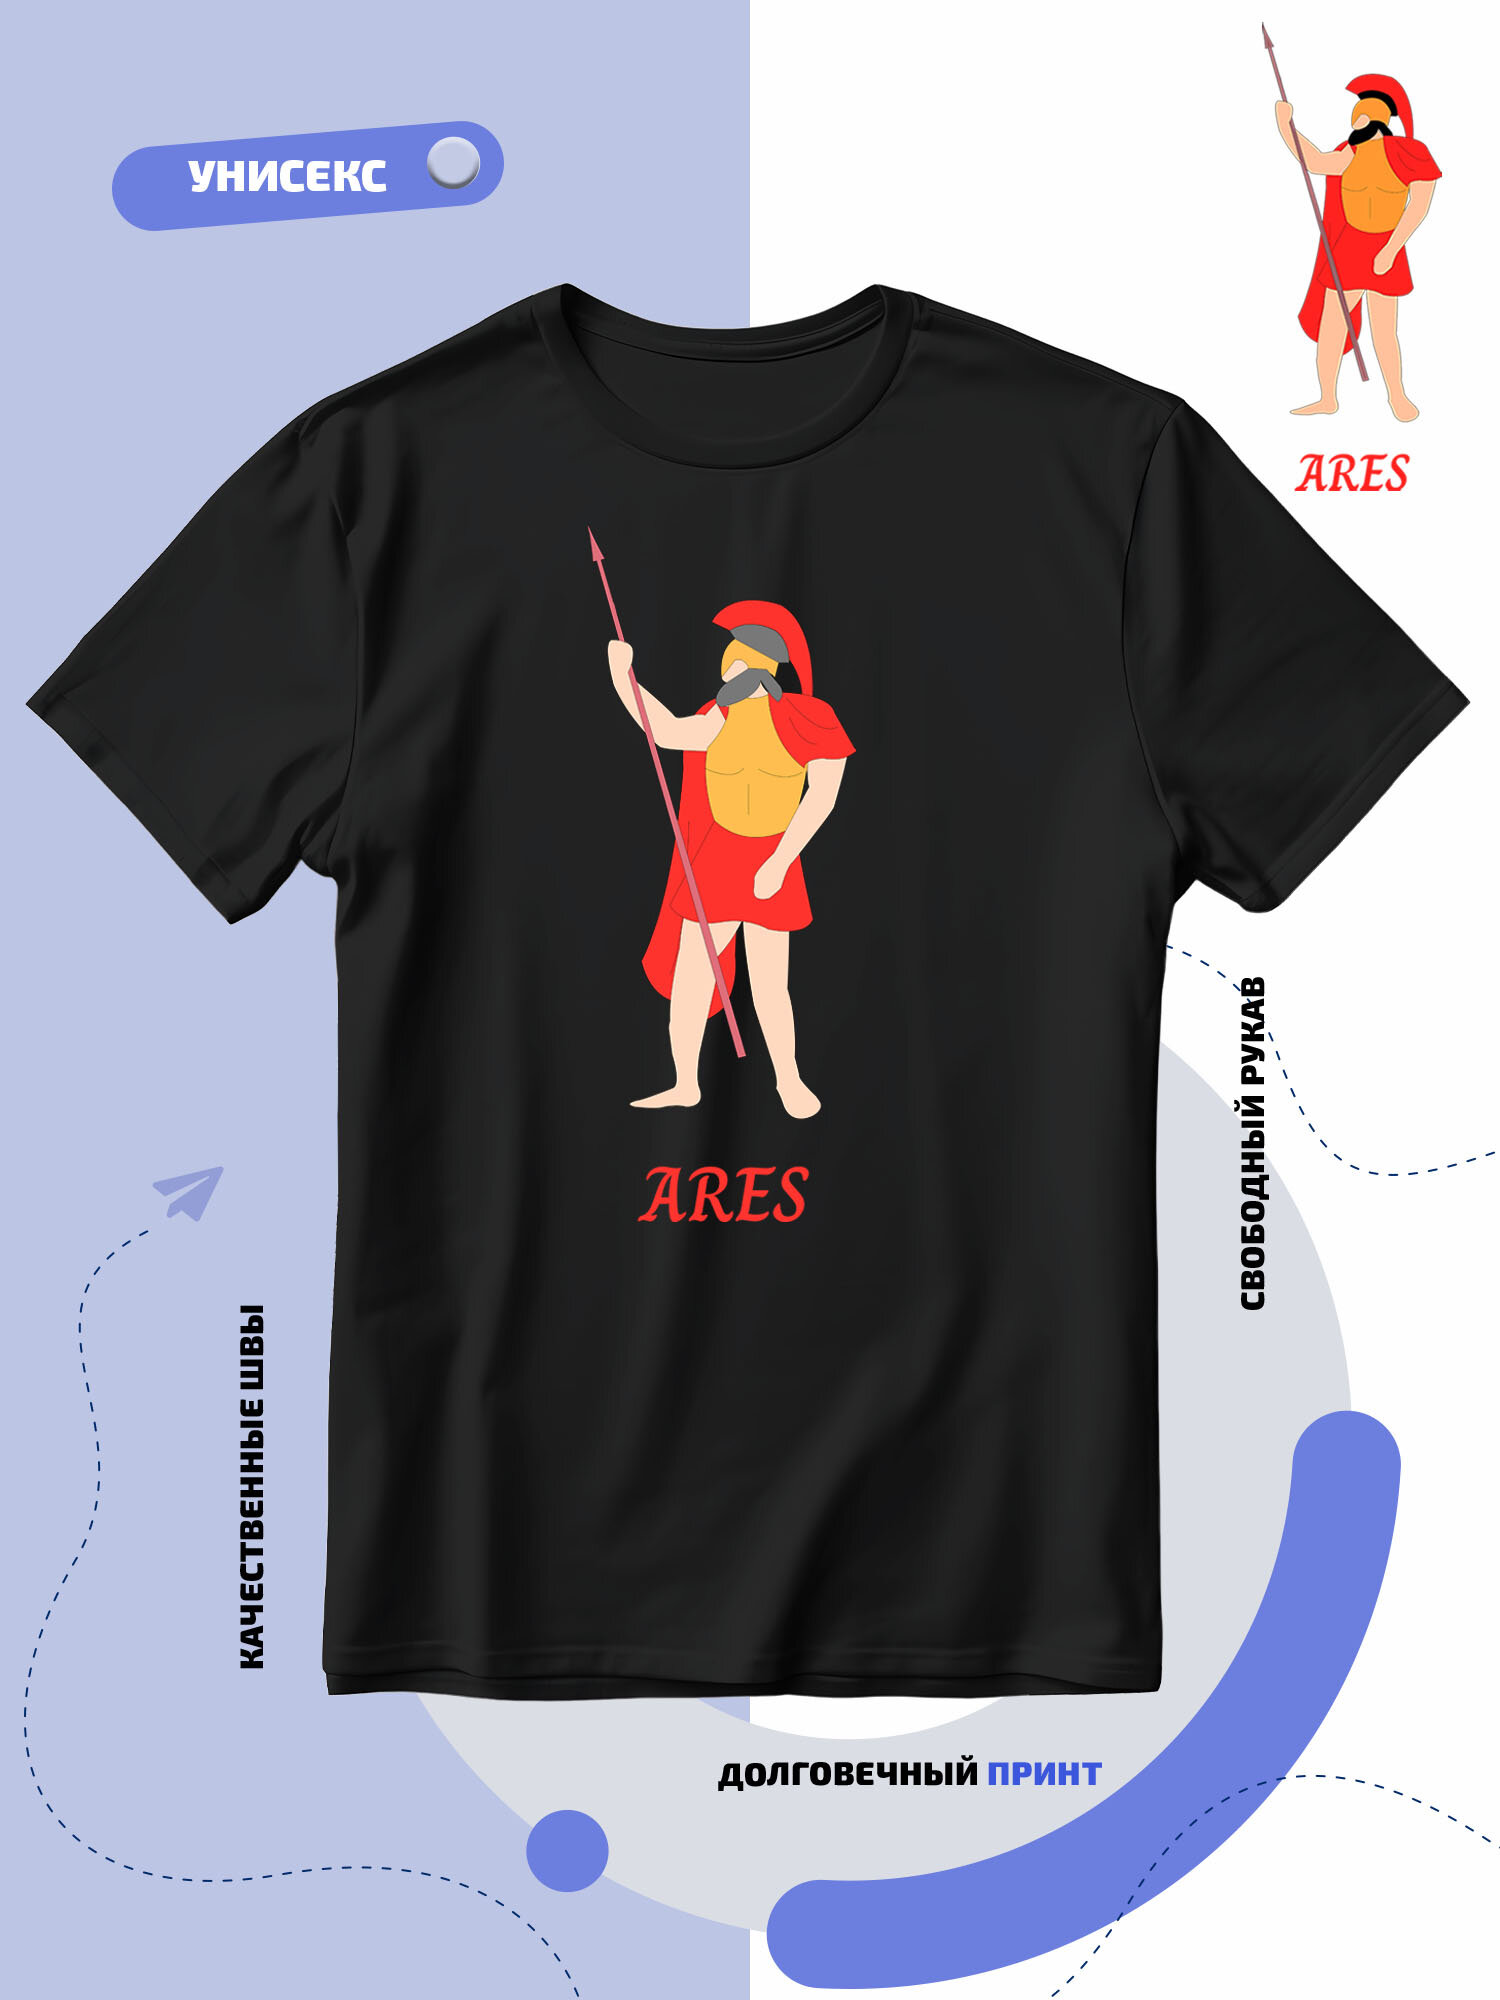 Футболка SMAIL-P Ares-Арес бог древнегреческой мифологии